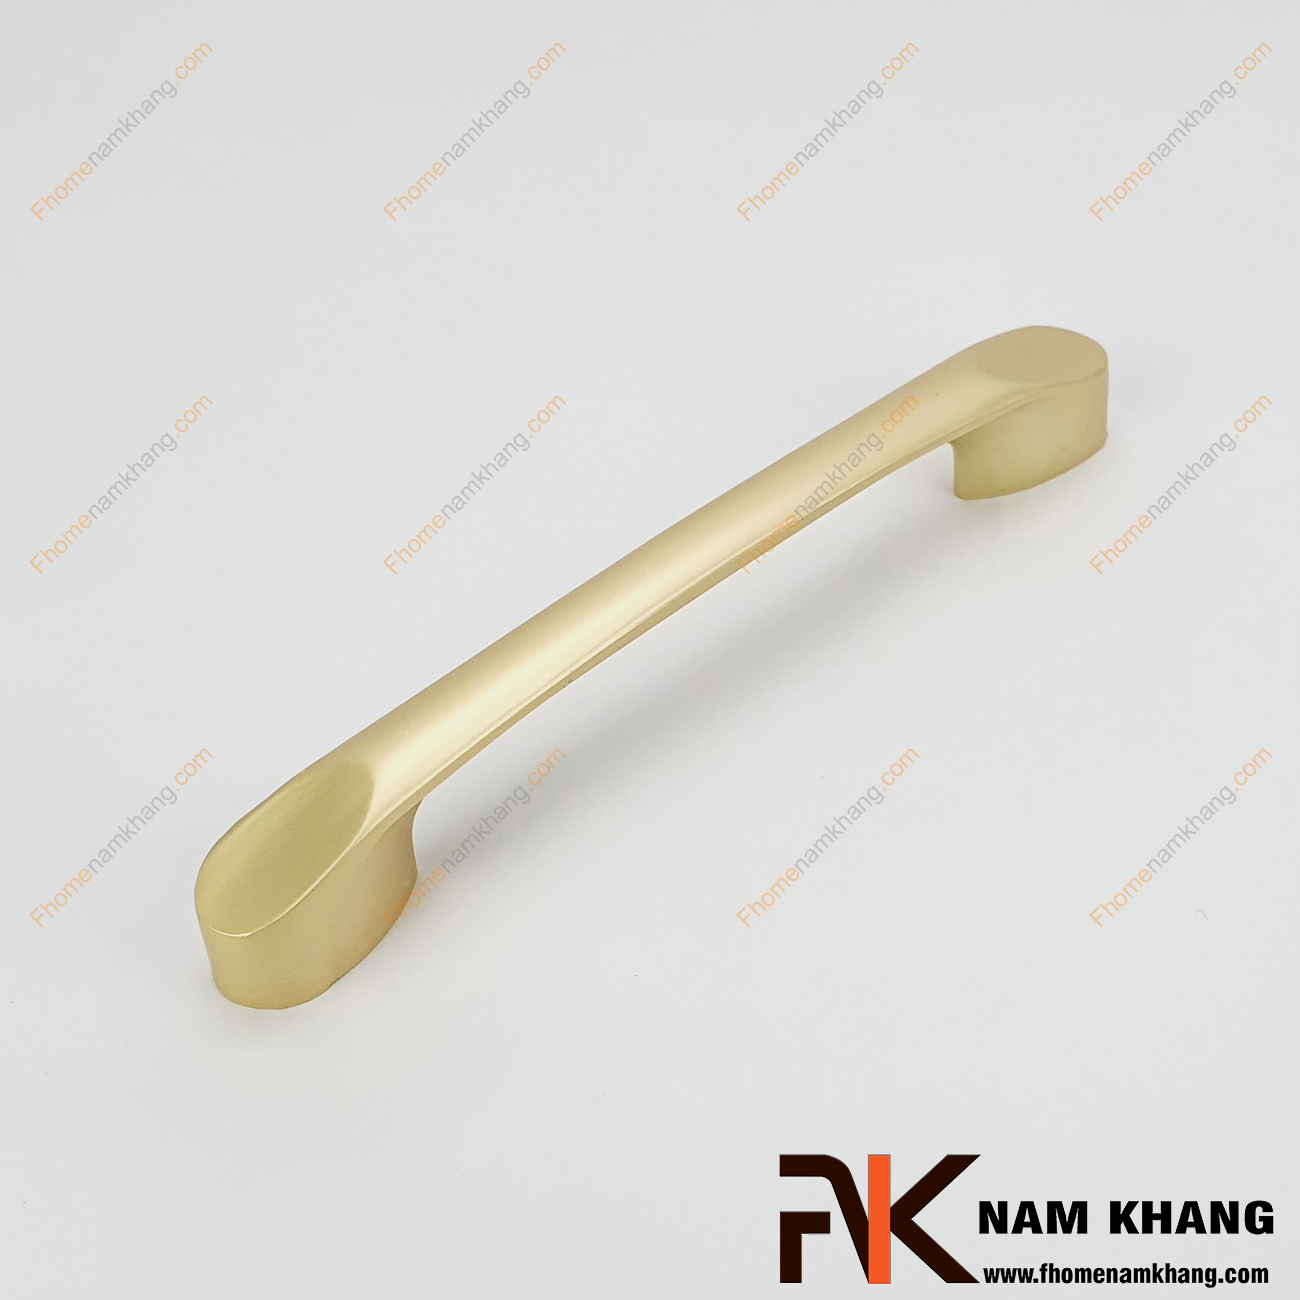 Tay nắm tủ màu vàng mờ bo tròn góc NK236L-VM là dòng tay nắm tủ mang phong cách nhỏ gọn, tiện dụng dạng thanh tròn bằng vật liệu hợp kim cao cấp.